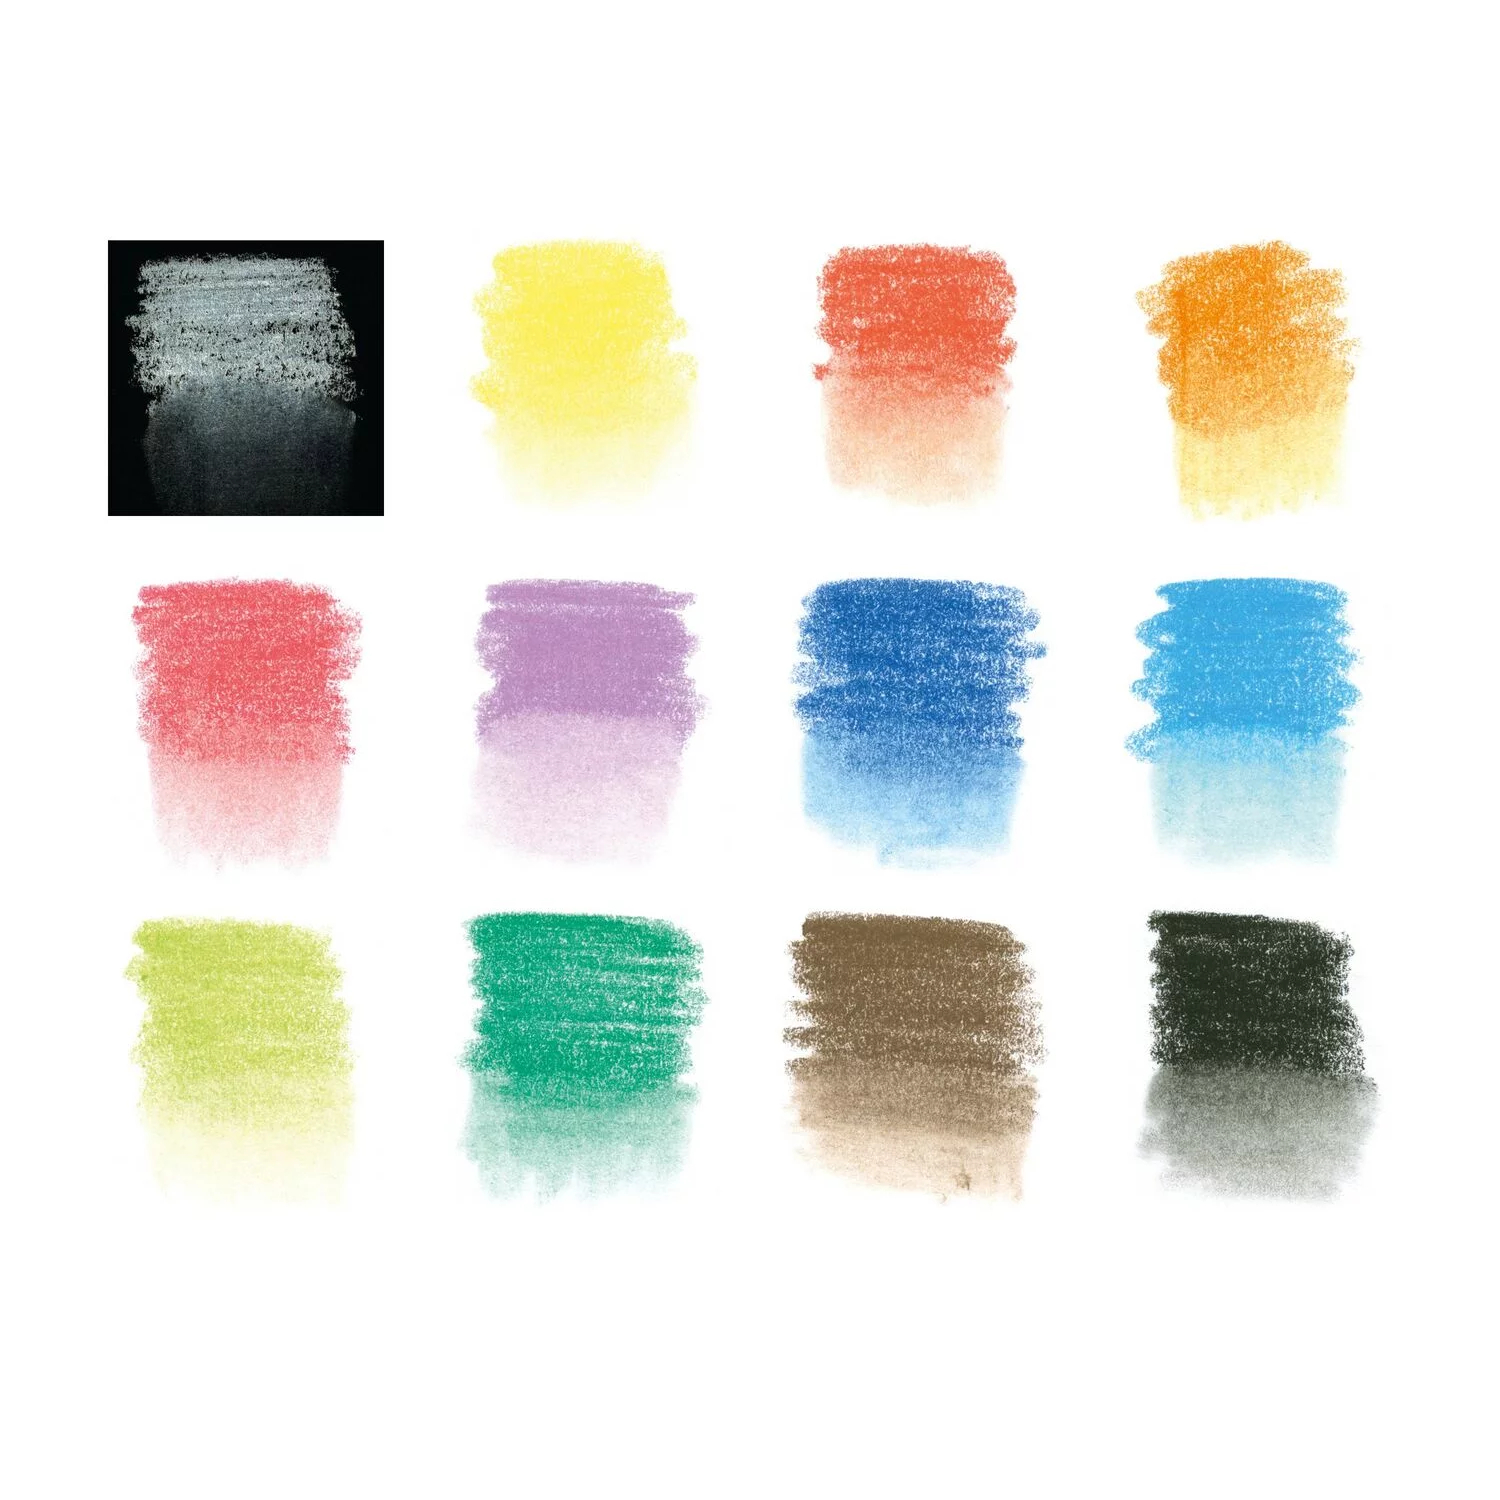 NEU Metalletui mit 12 Pastellstiften in sortierten Farben Bild 4